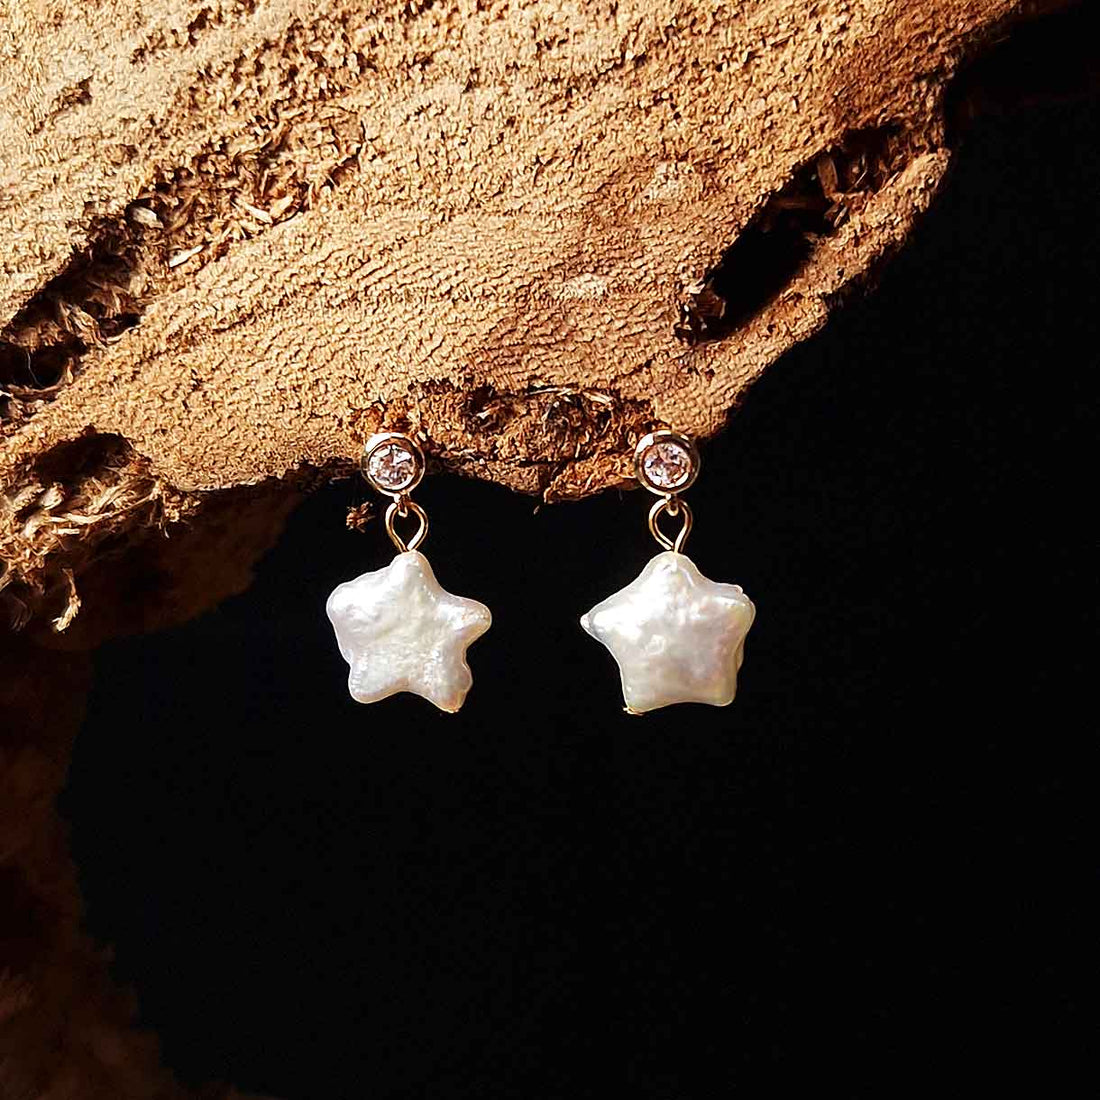 Zoetwater parel oorbellen met ster parel en stras steentje hangend aan hout | Bling Pearl Star Gold